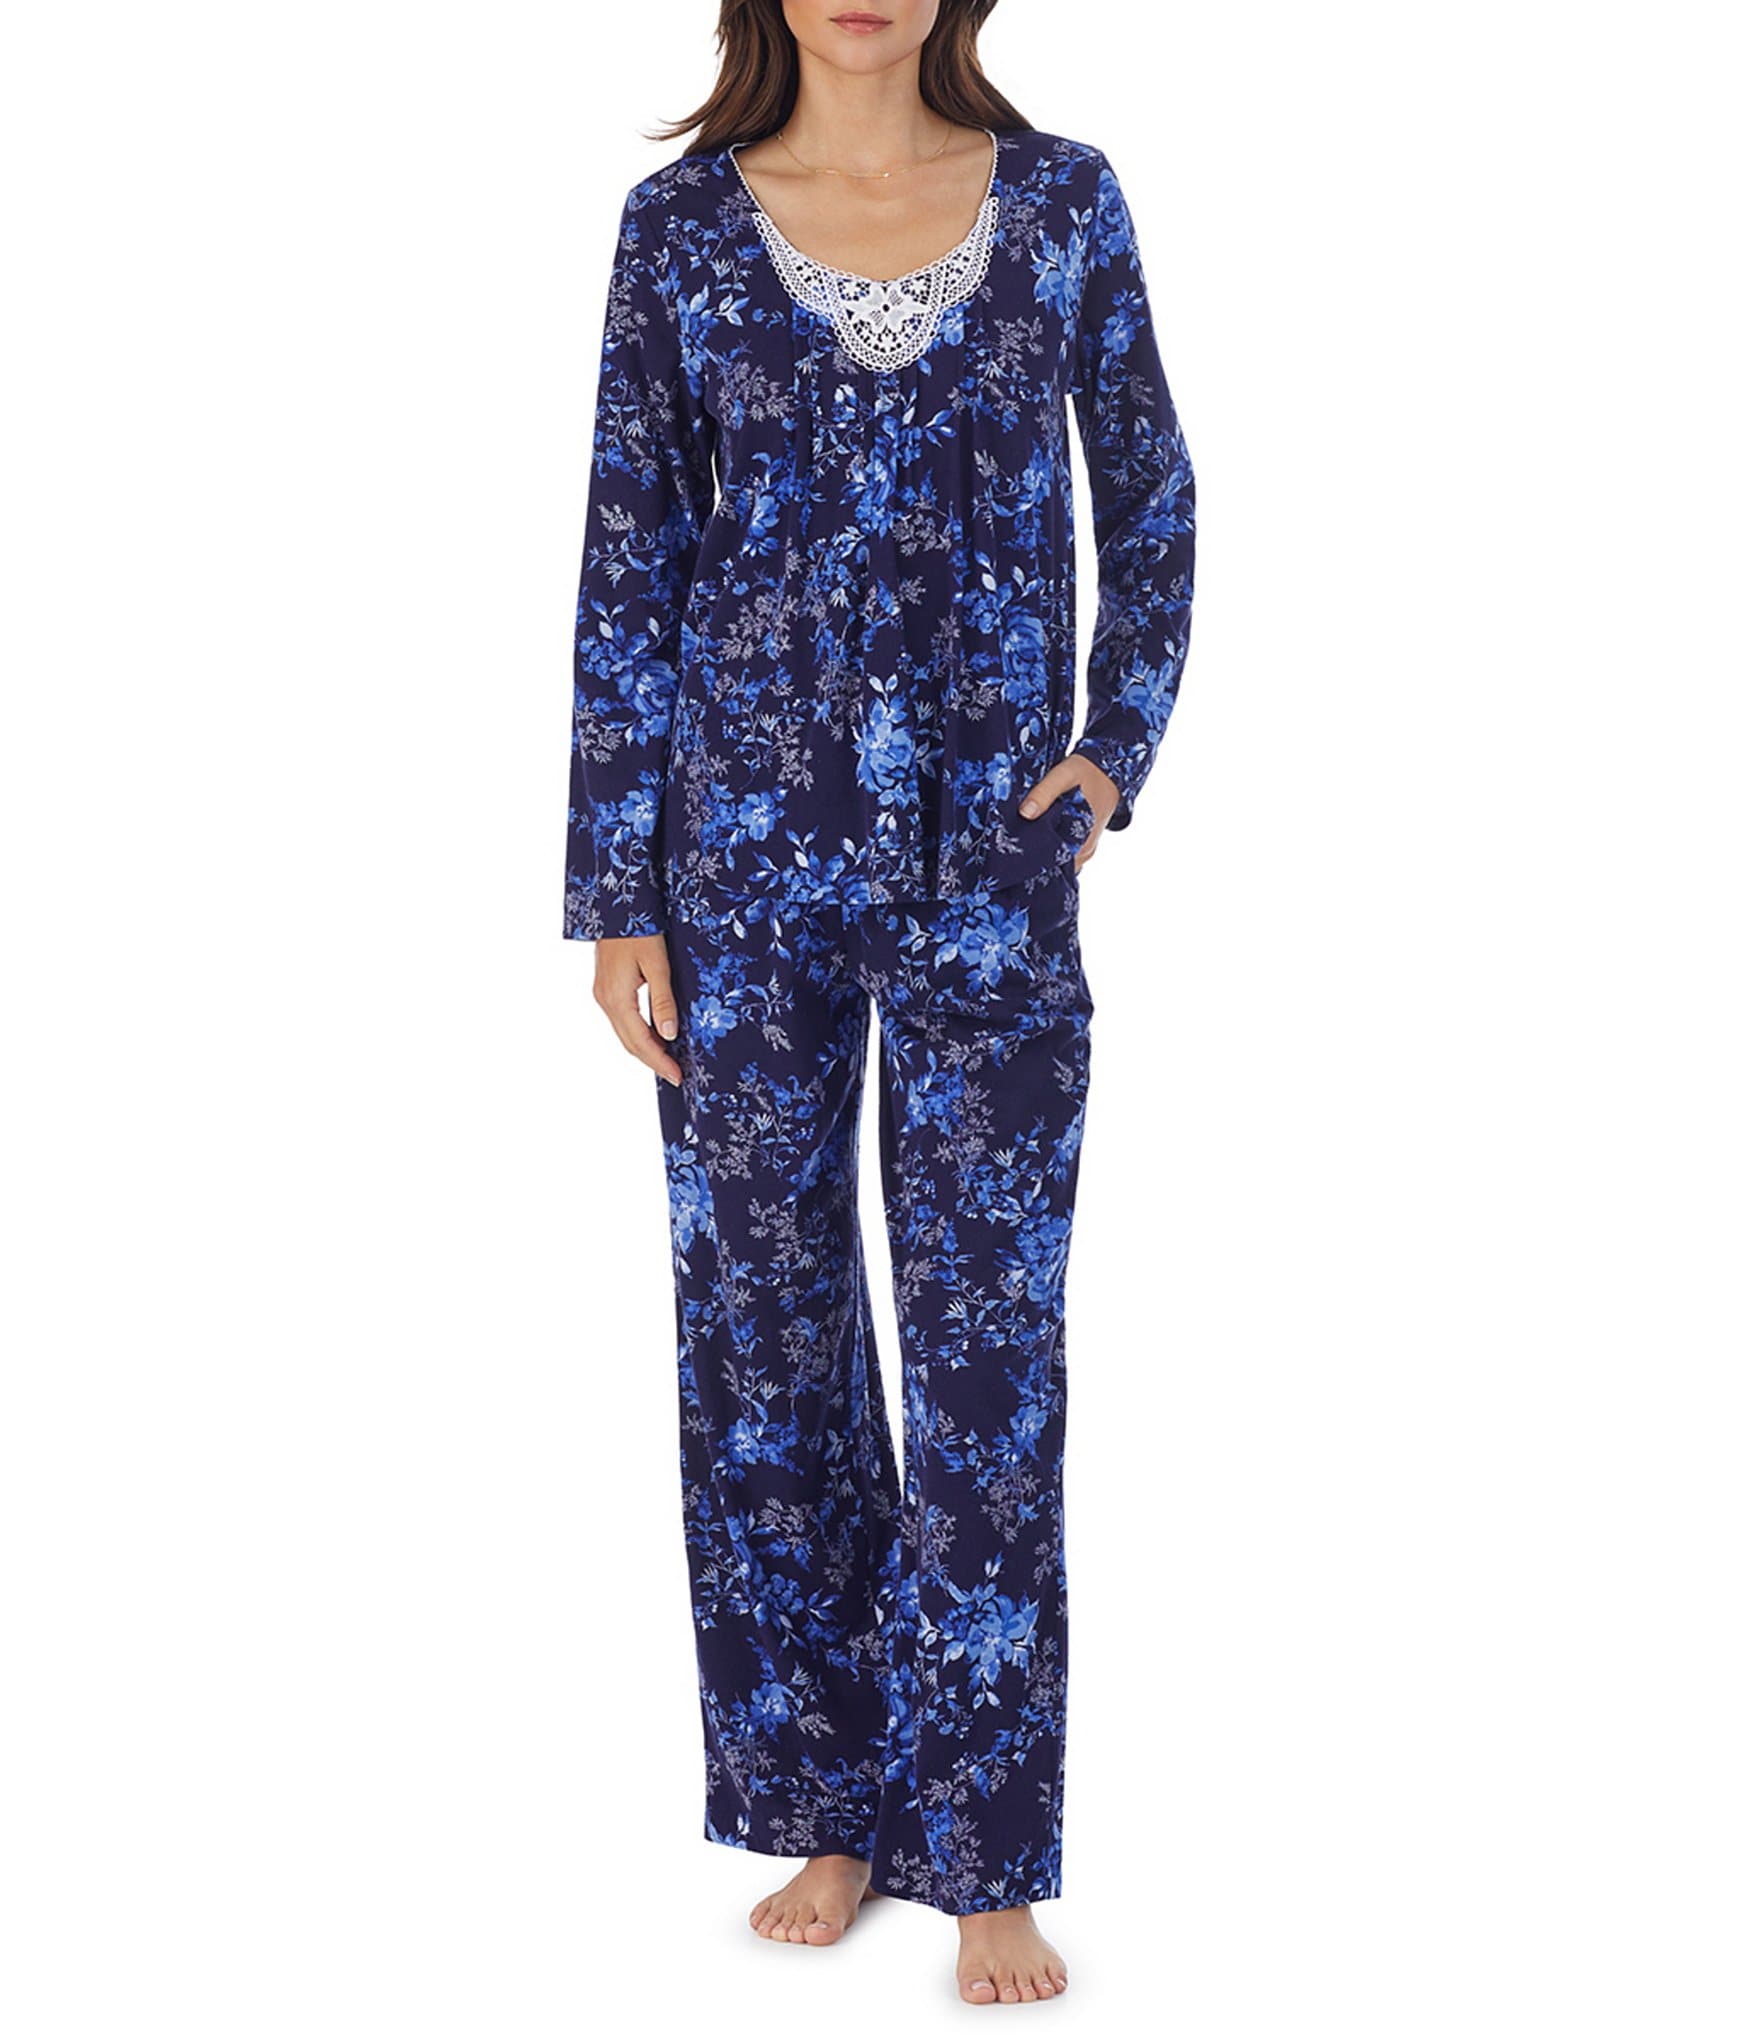 Lauren Ralph Lauren Short-Sleeve Bermuda Coordinating Pajama Set | Dillard's